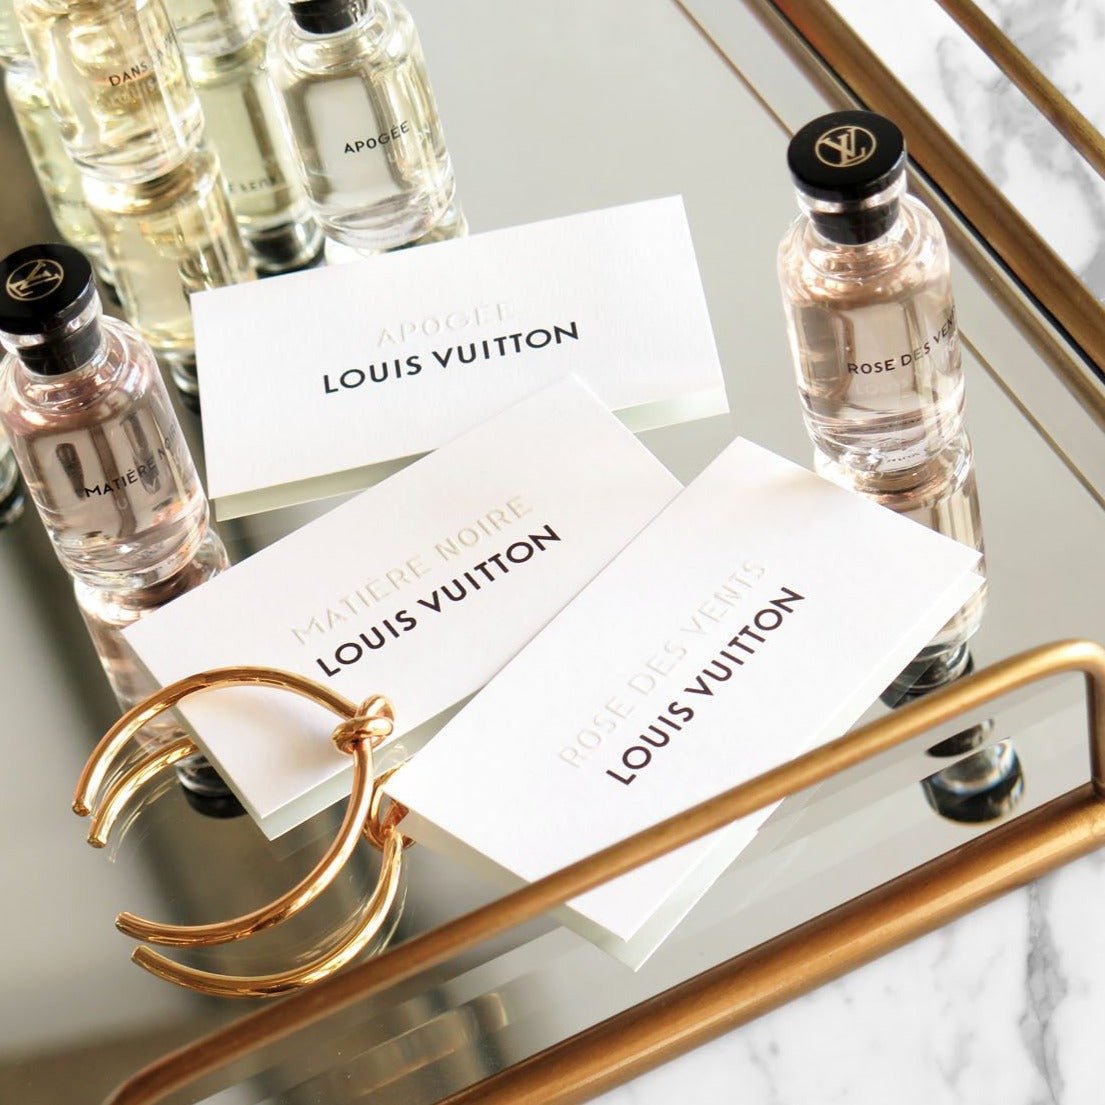 Louis Vuitton Apogee EDP Travel Refill Set | My Perfume Shop Australia